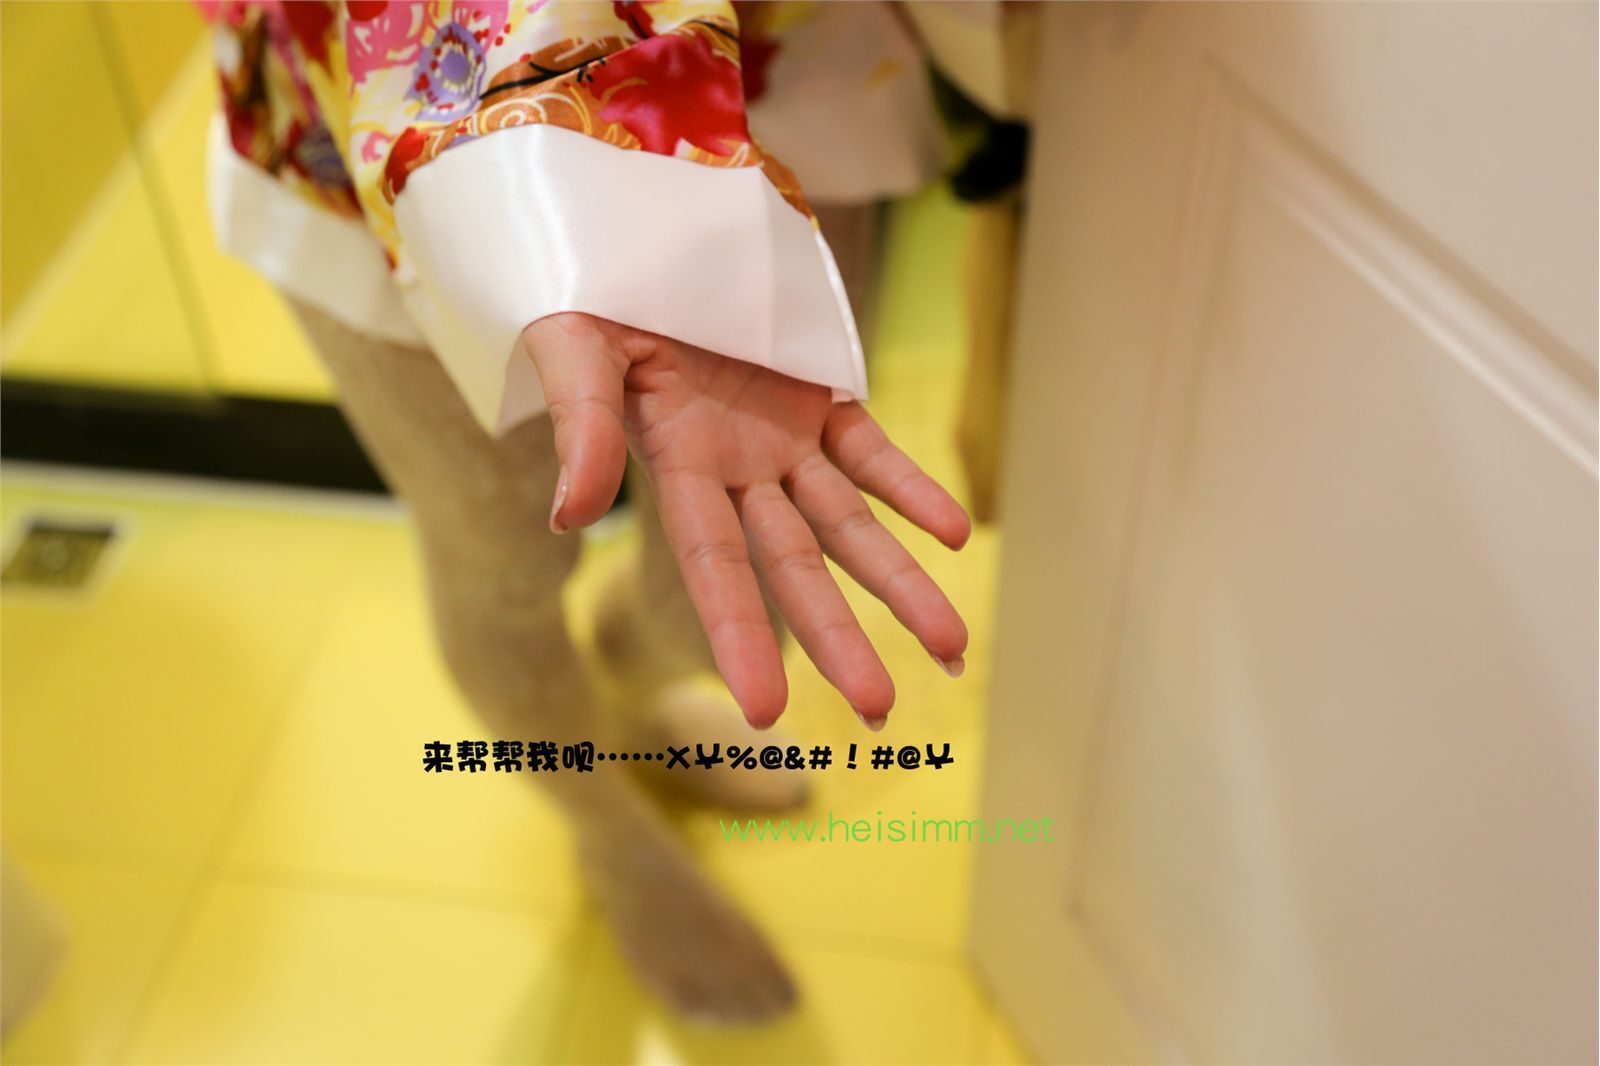 [Heisi Photo] 2013.05.14 no.006 white silk kimono theater Edition